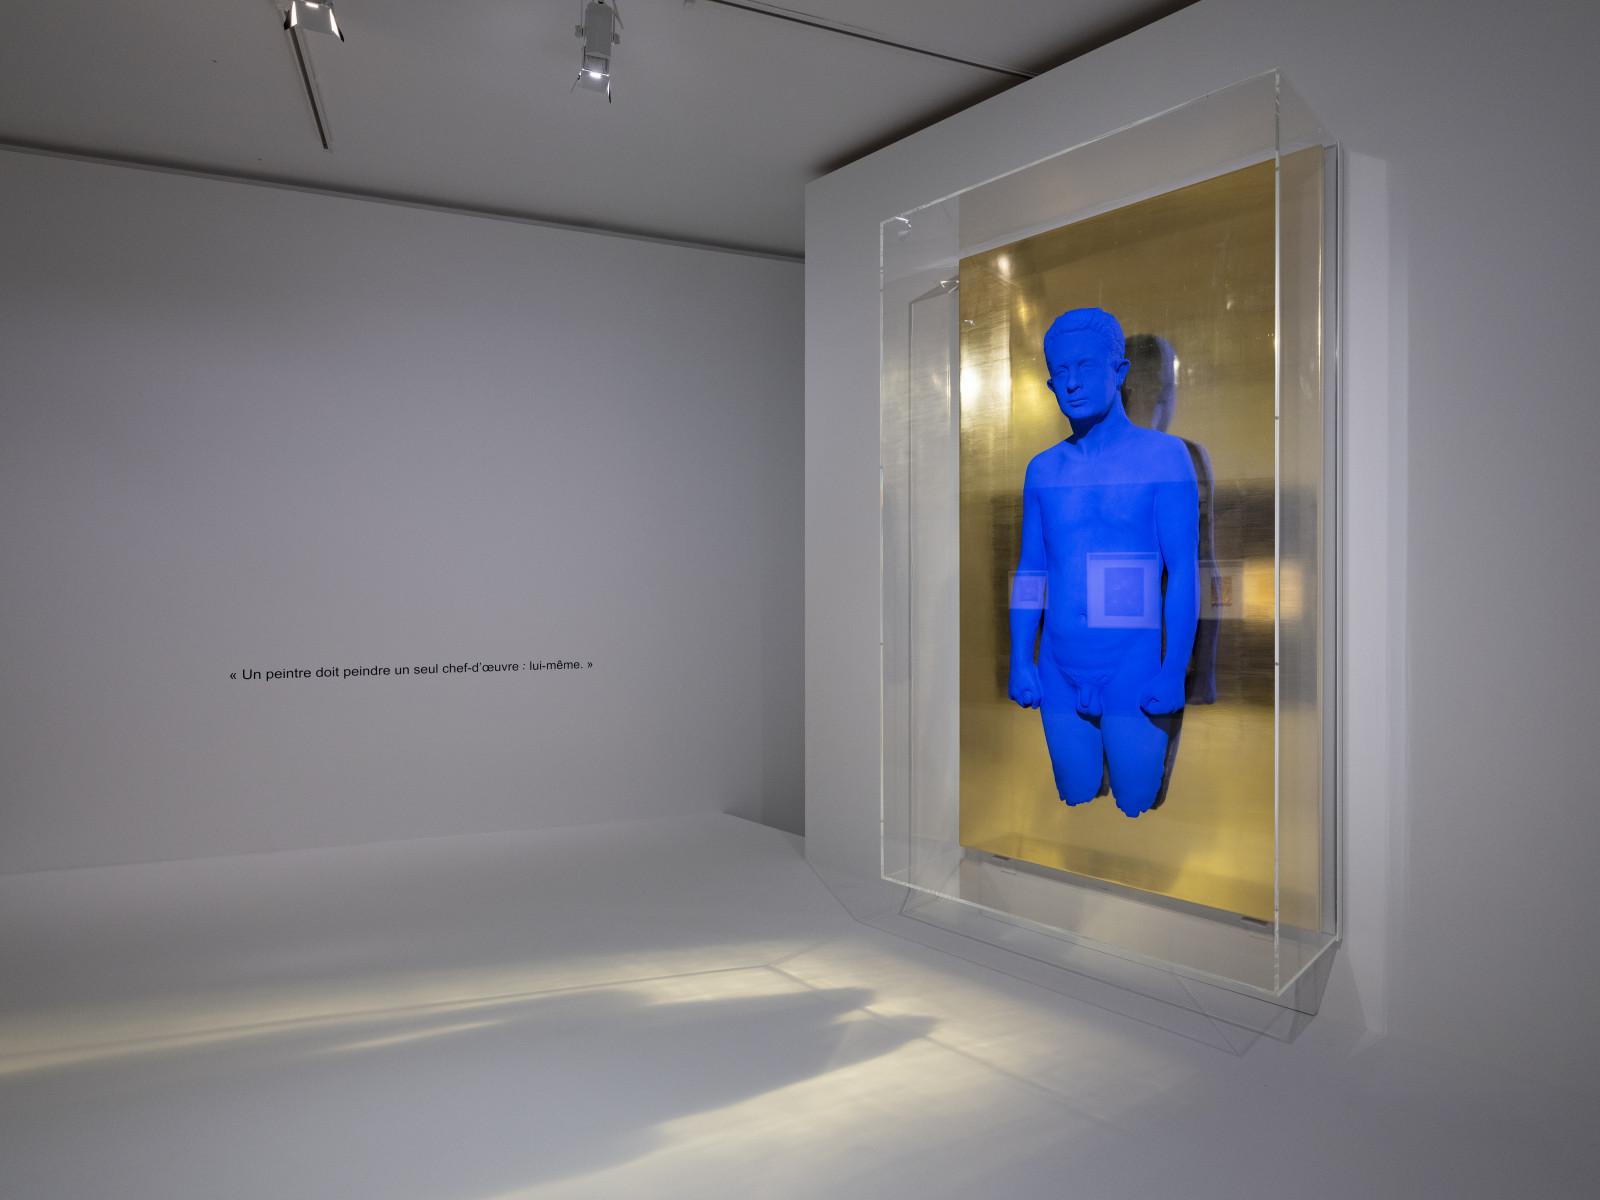 View of the exhibition "Yves Klein, Intime", Hôtel de Caumont, Aix-en-Provence, France, 2022